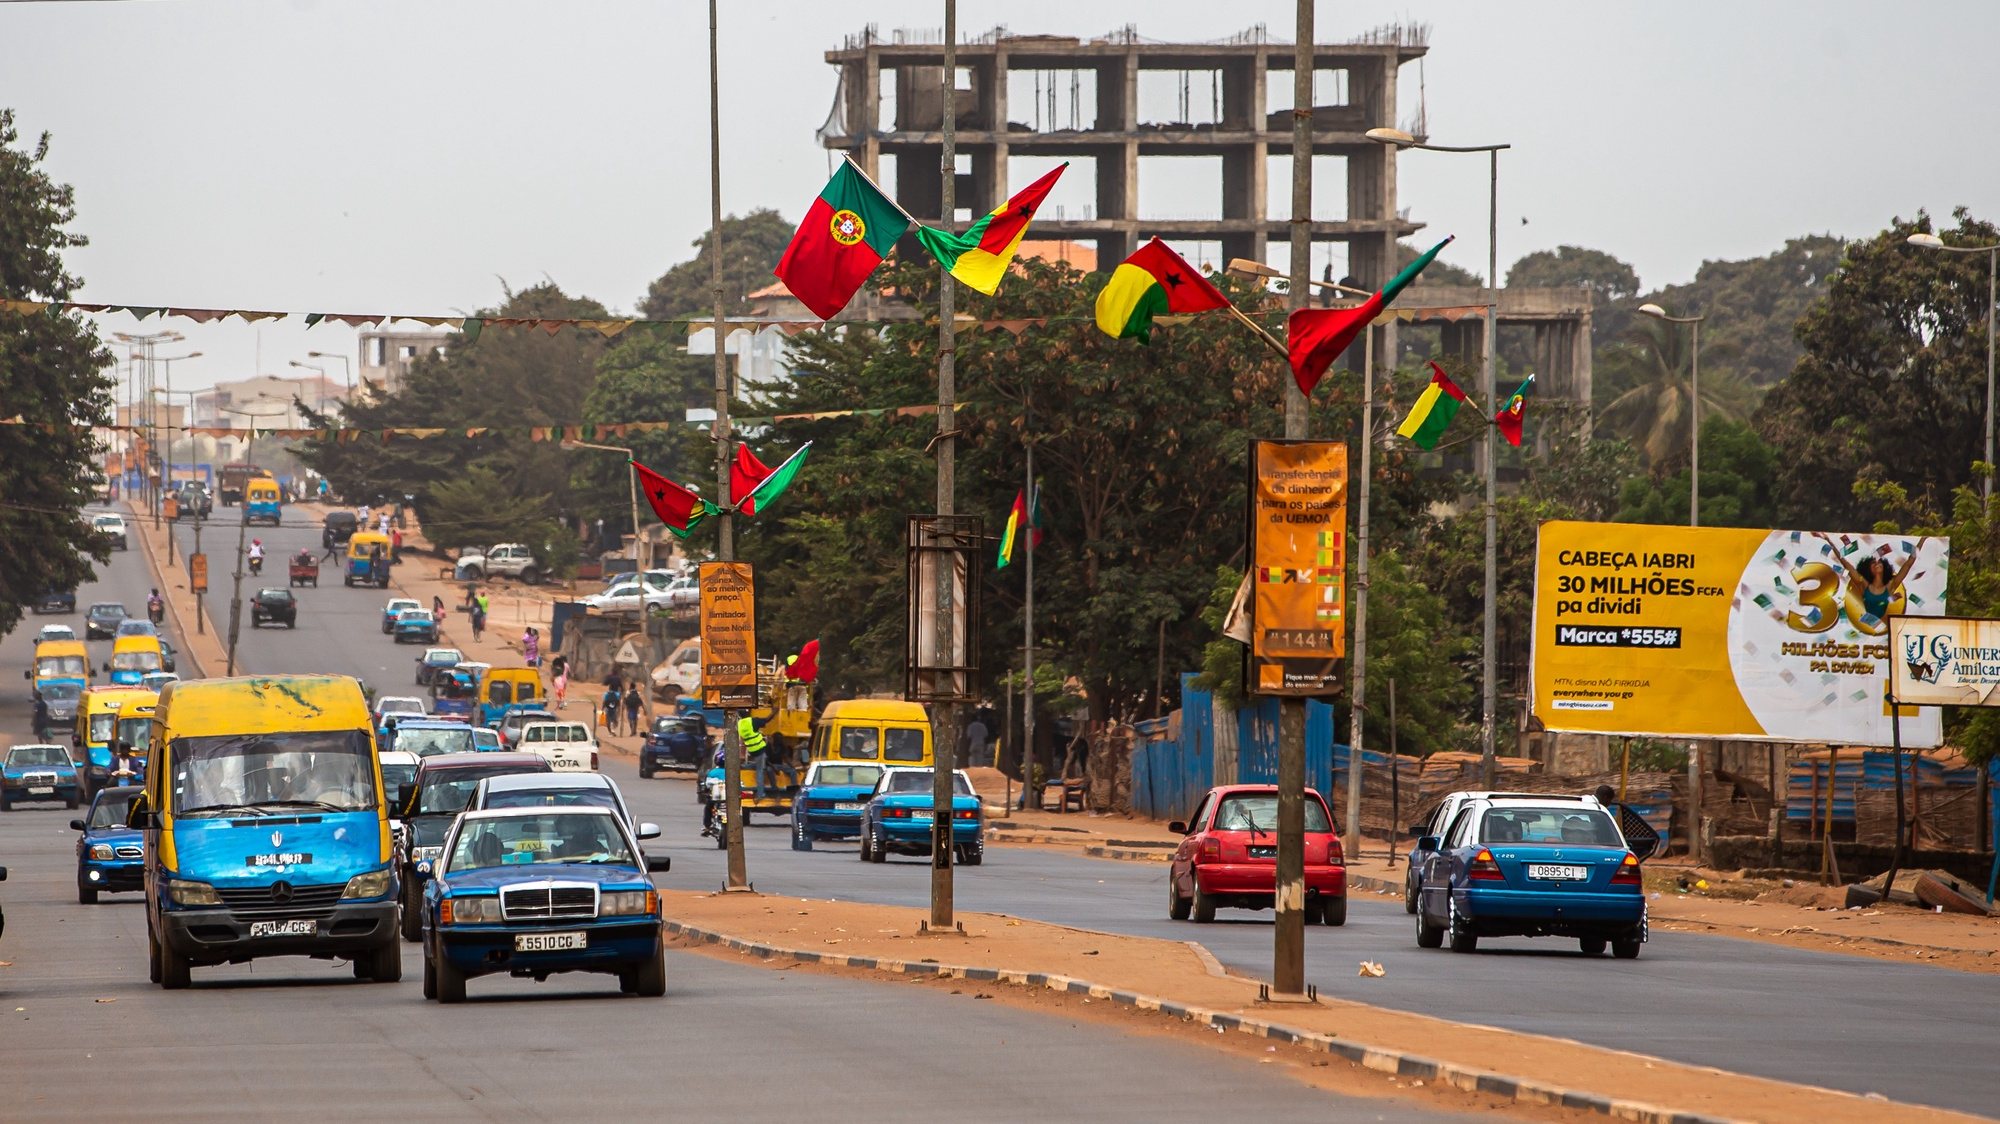 Bandeiras de Portugal e da Guiné-Bissau para assinalar a visita do Presidente de Portugal Marcelo Rebelo de Sousa, Bissau, na Guiné-Bissau, 16 de maio de 2021. JOSÉ SENA GOULÃO/LUSA